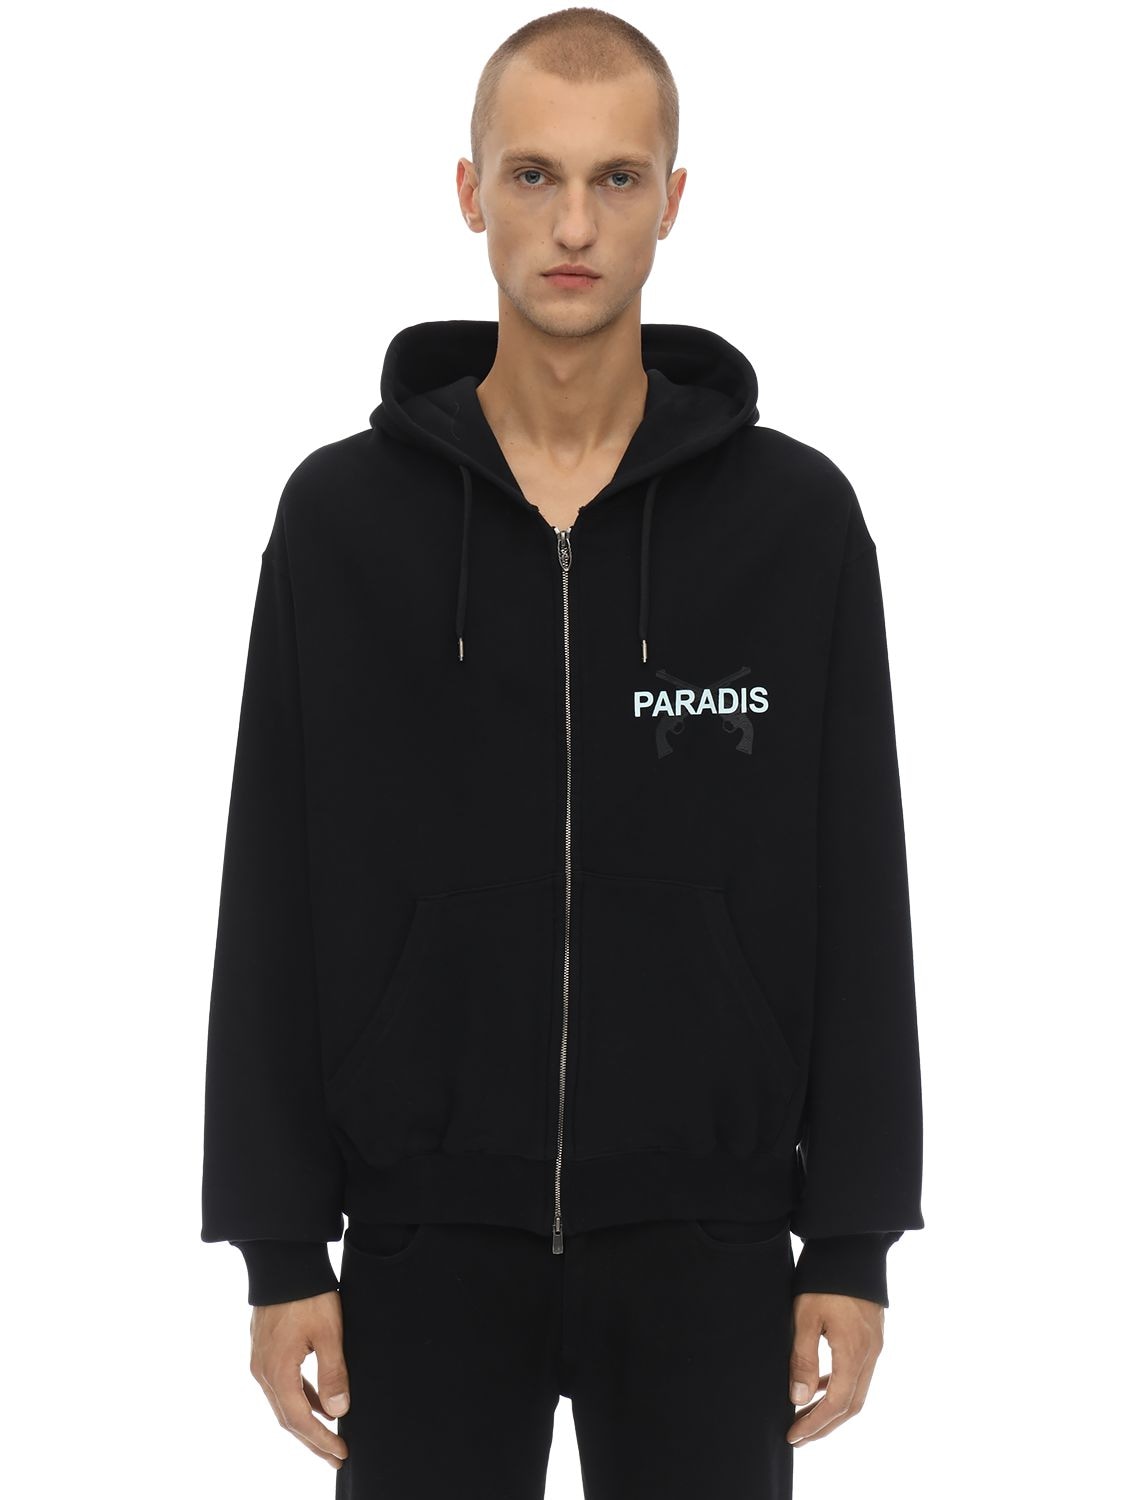 3.paradis Dove Printed Zip-up Sweatshirt Hoodie In Black | ModeSens